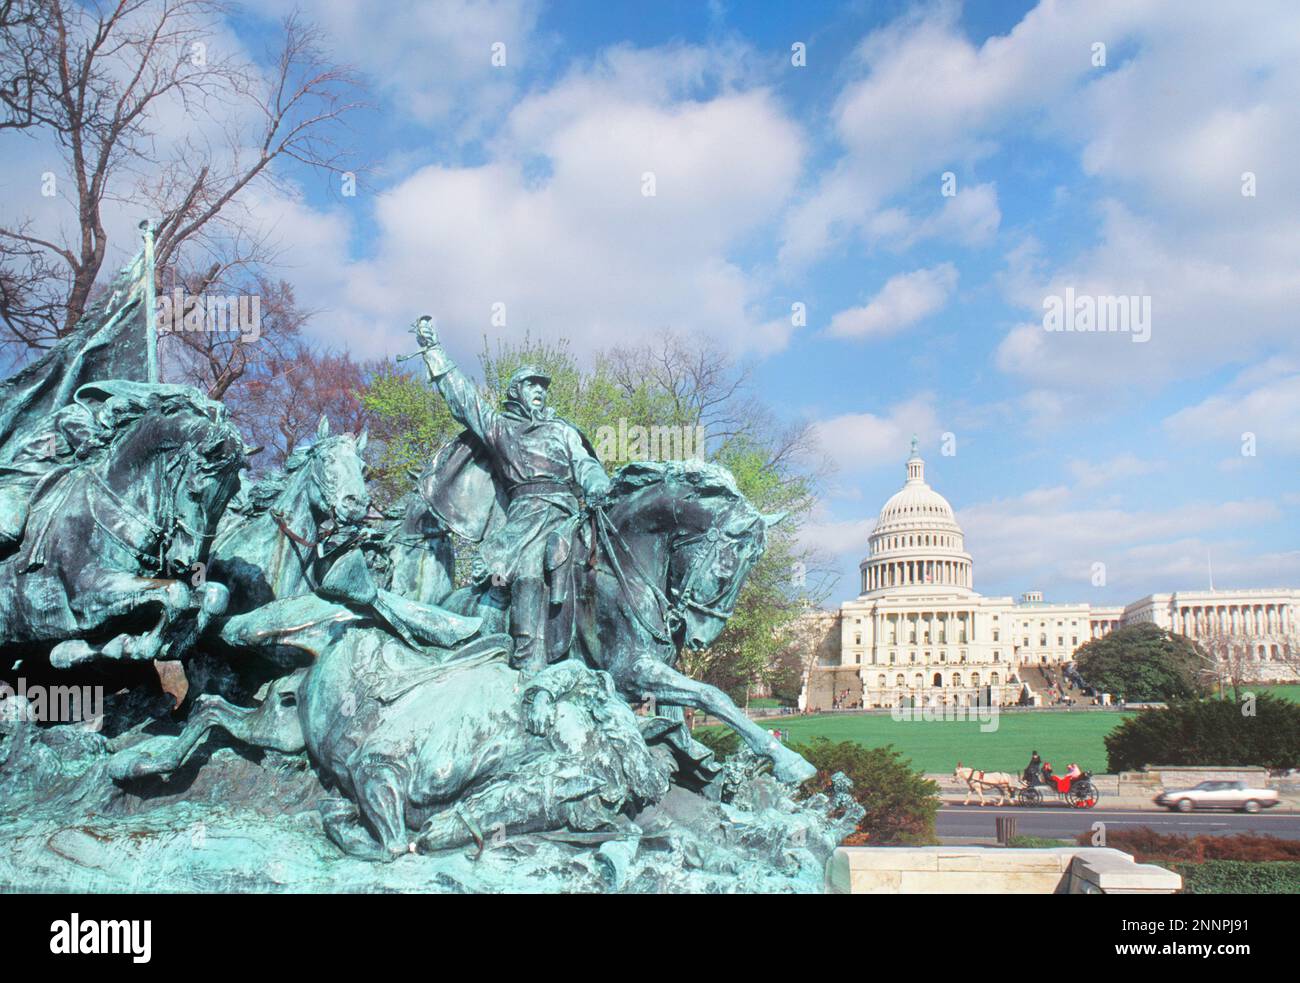 Cavalerie charge Ulysses S Grant Memorial Washington DC et le bâtiment du Capitole des États-Unis sur le Mall. Guerre civile des États-Unis. États-Unis Banque D'Images